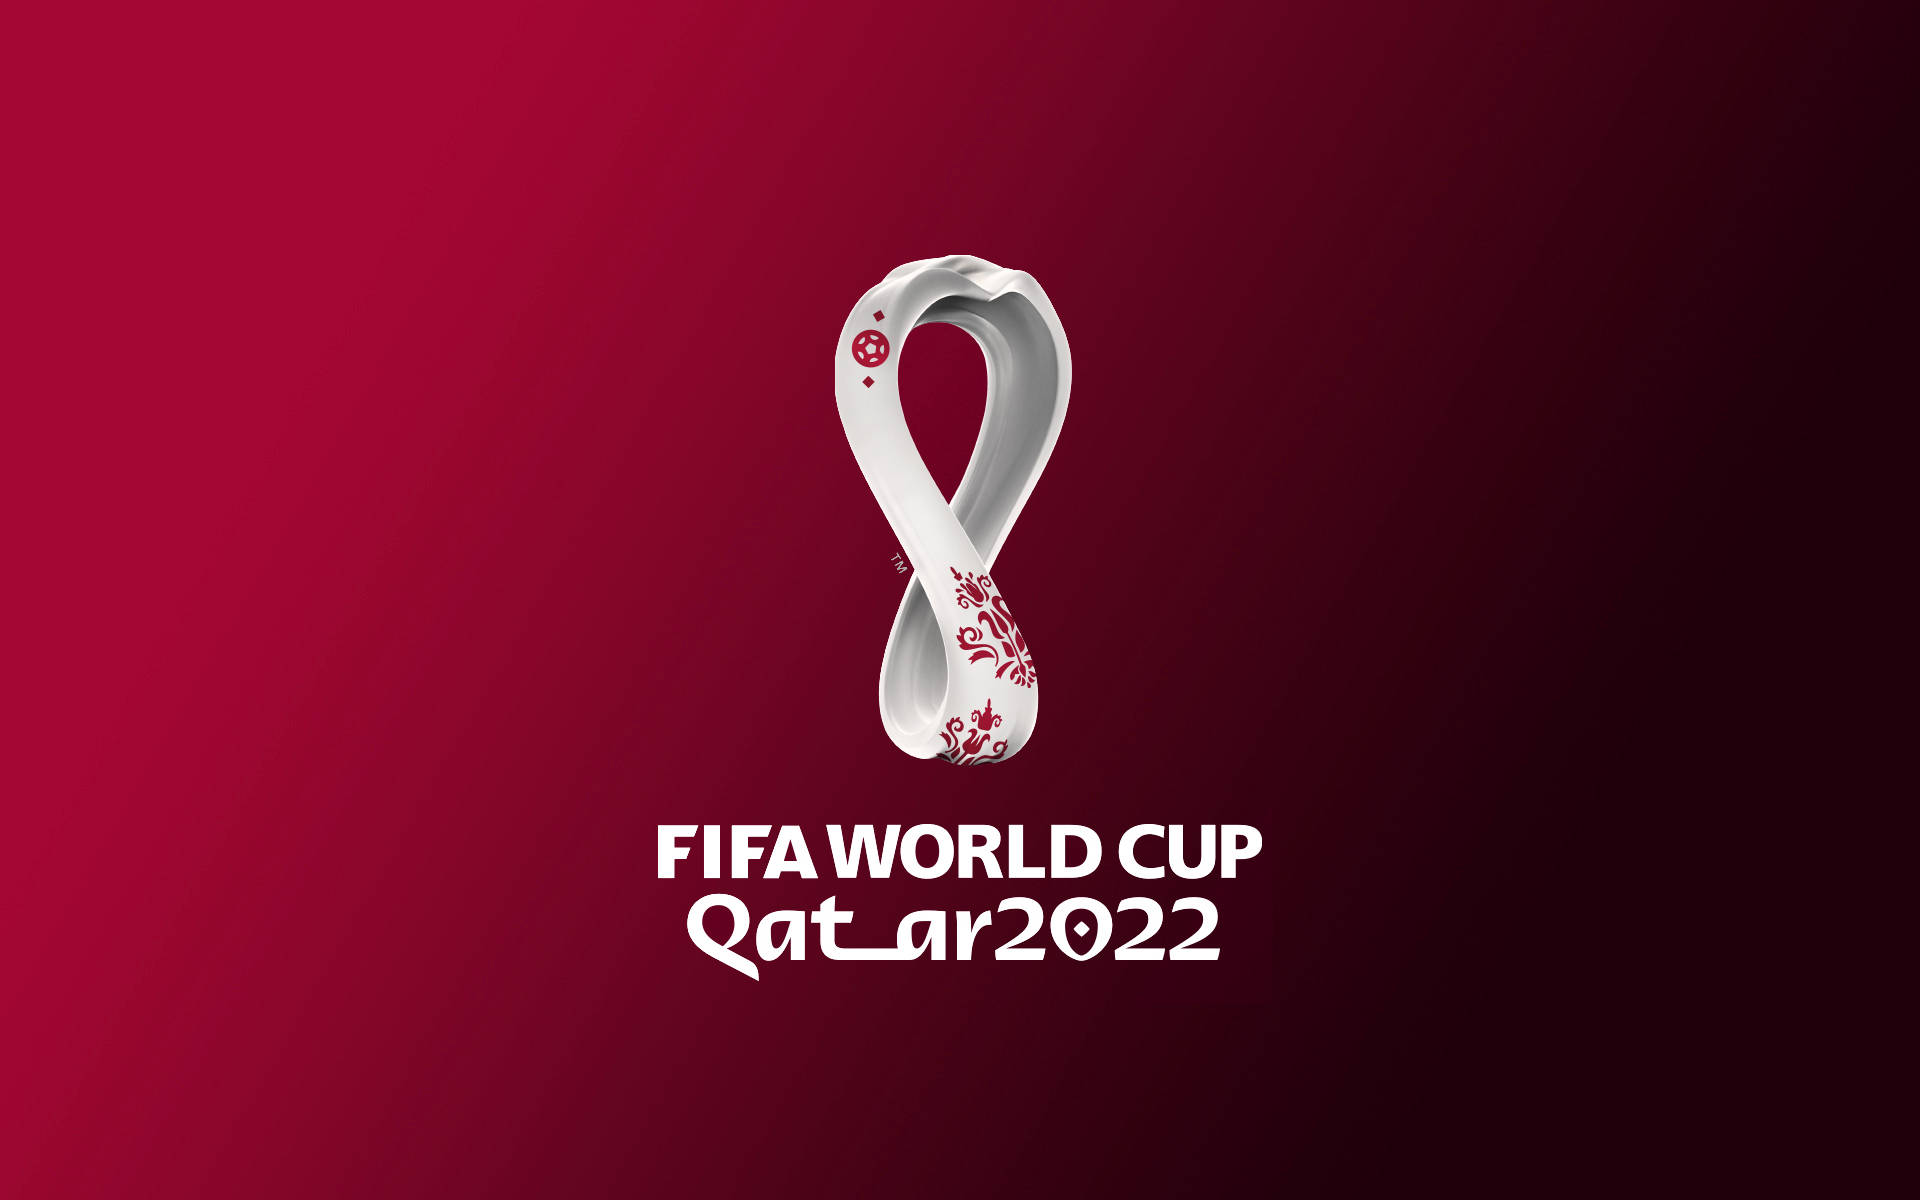 FIFA World Cup Qatar 2022 004 Mistrzostwa Swiata w Pilce Noznej Katar 2022, Logo